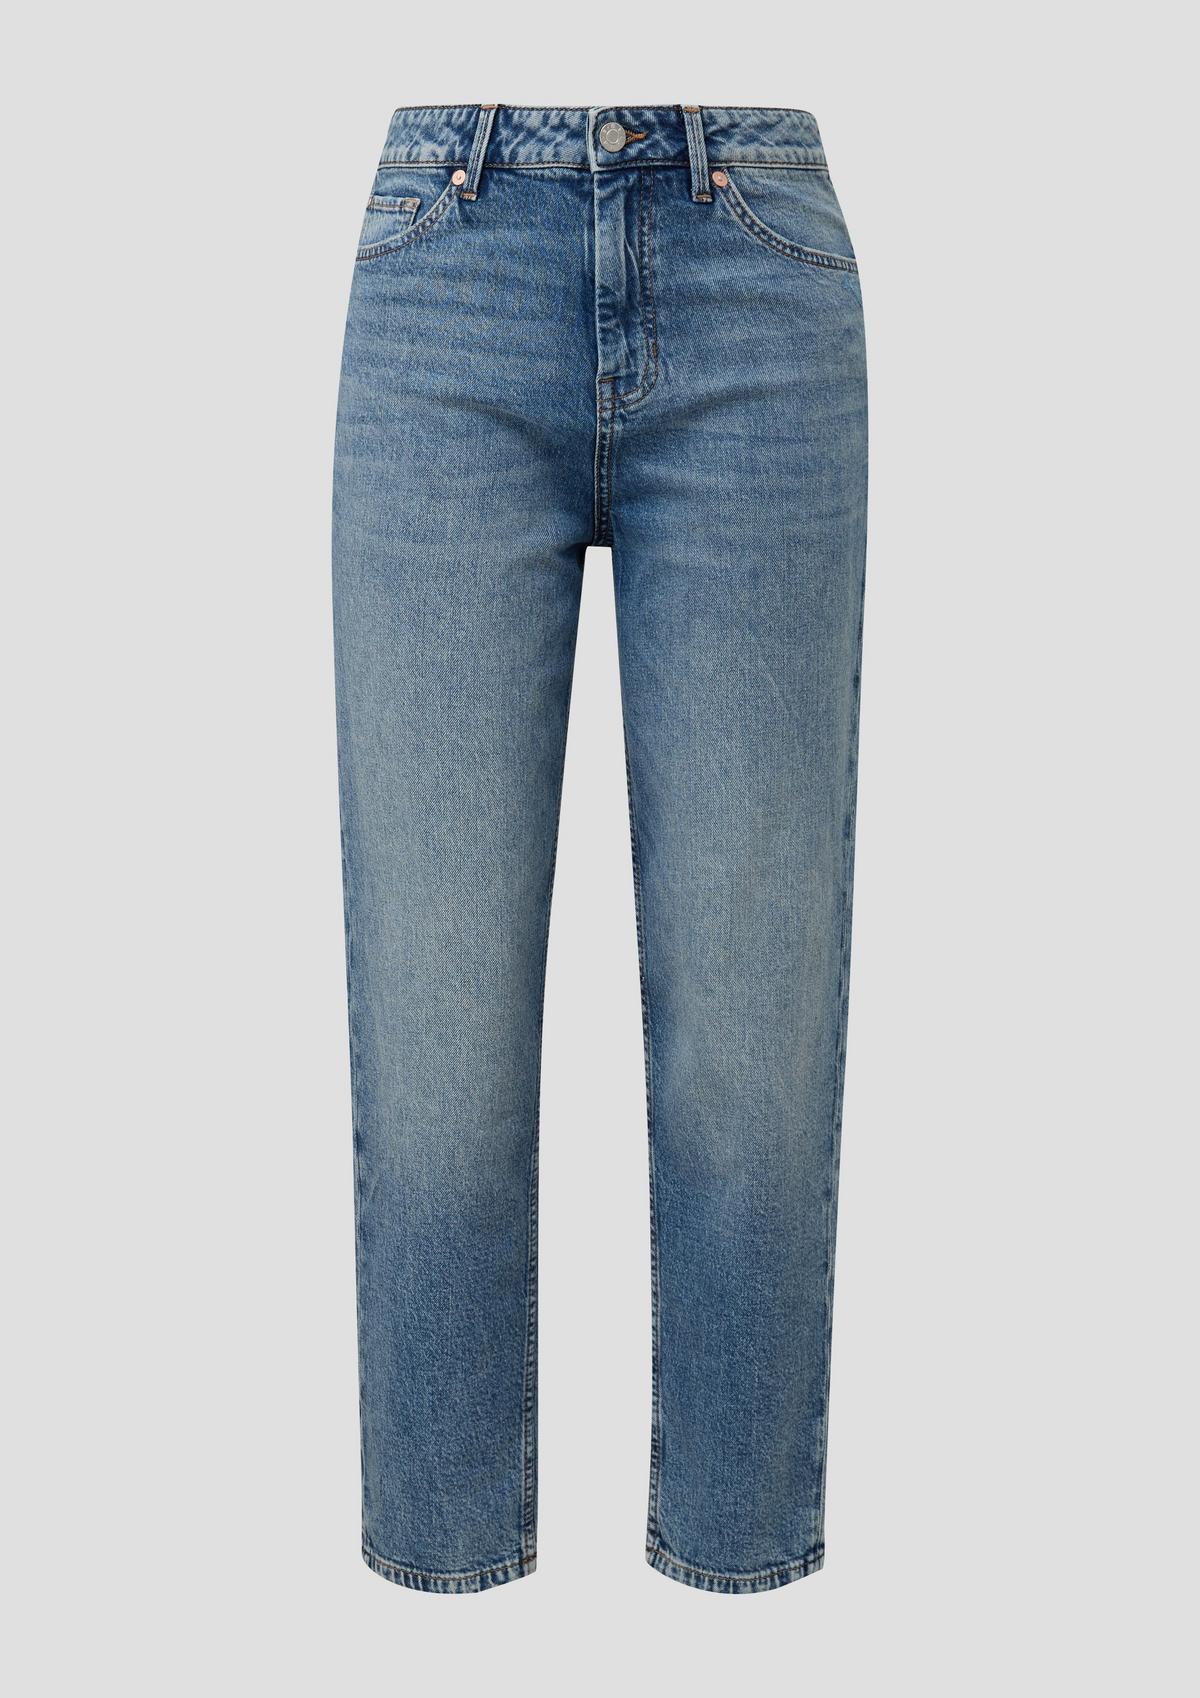 s.Oliver Mom jeans / regular fit / high rise / wide leg